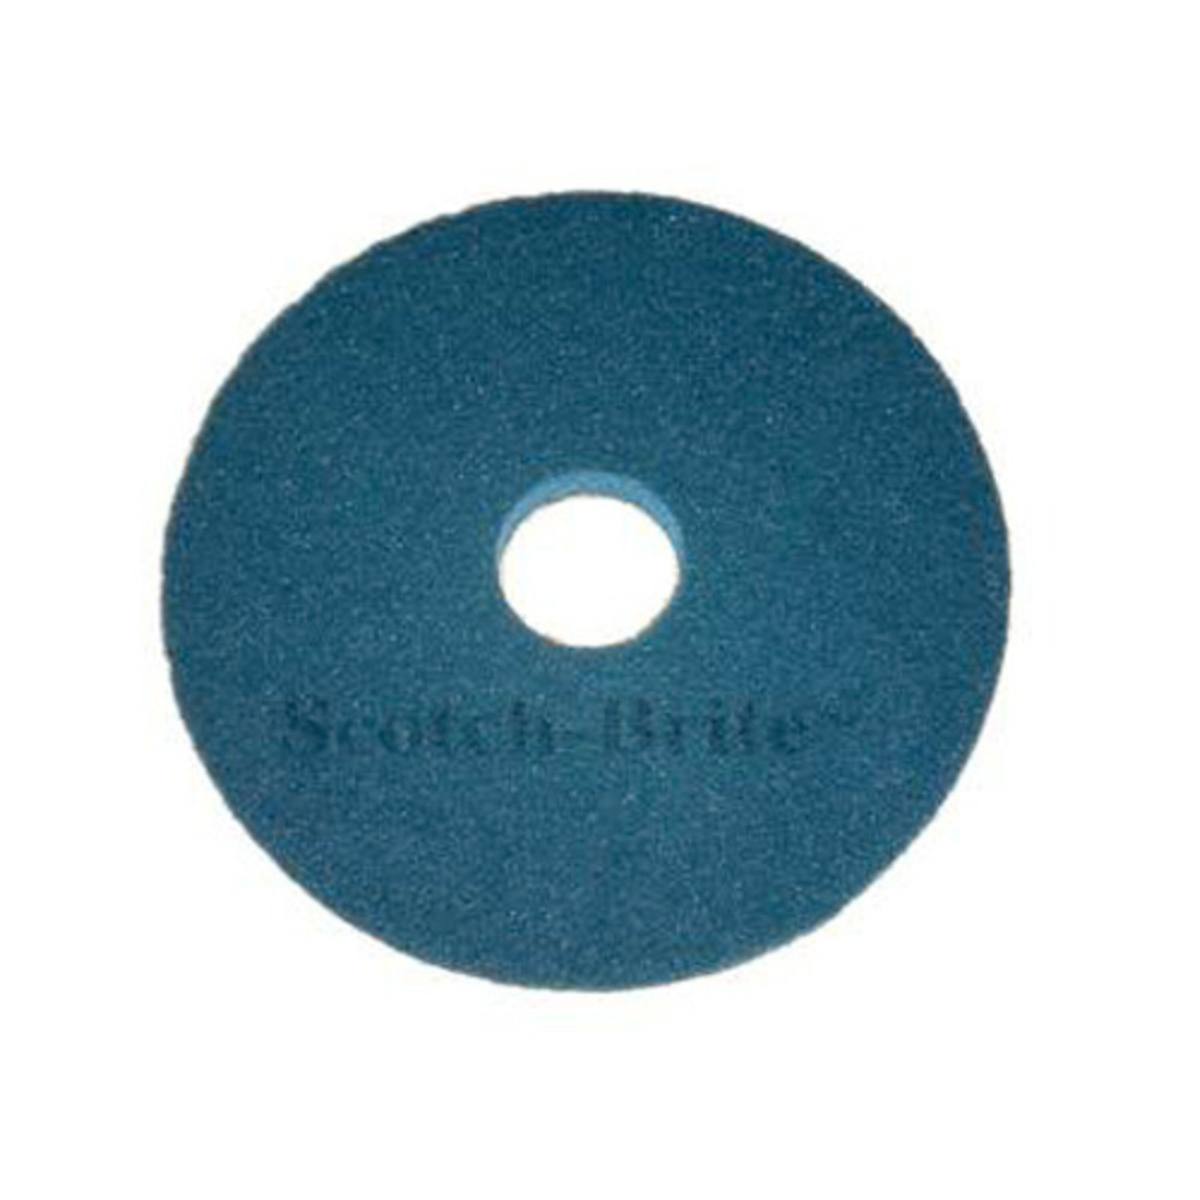 3M Scotch-Brite Superpad, Blau, 460 mm